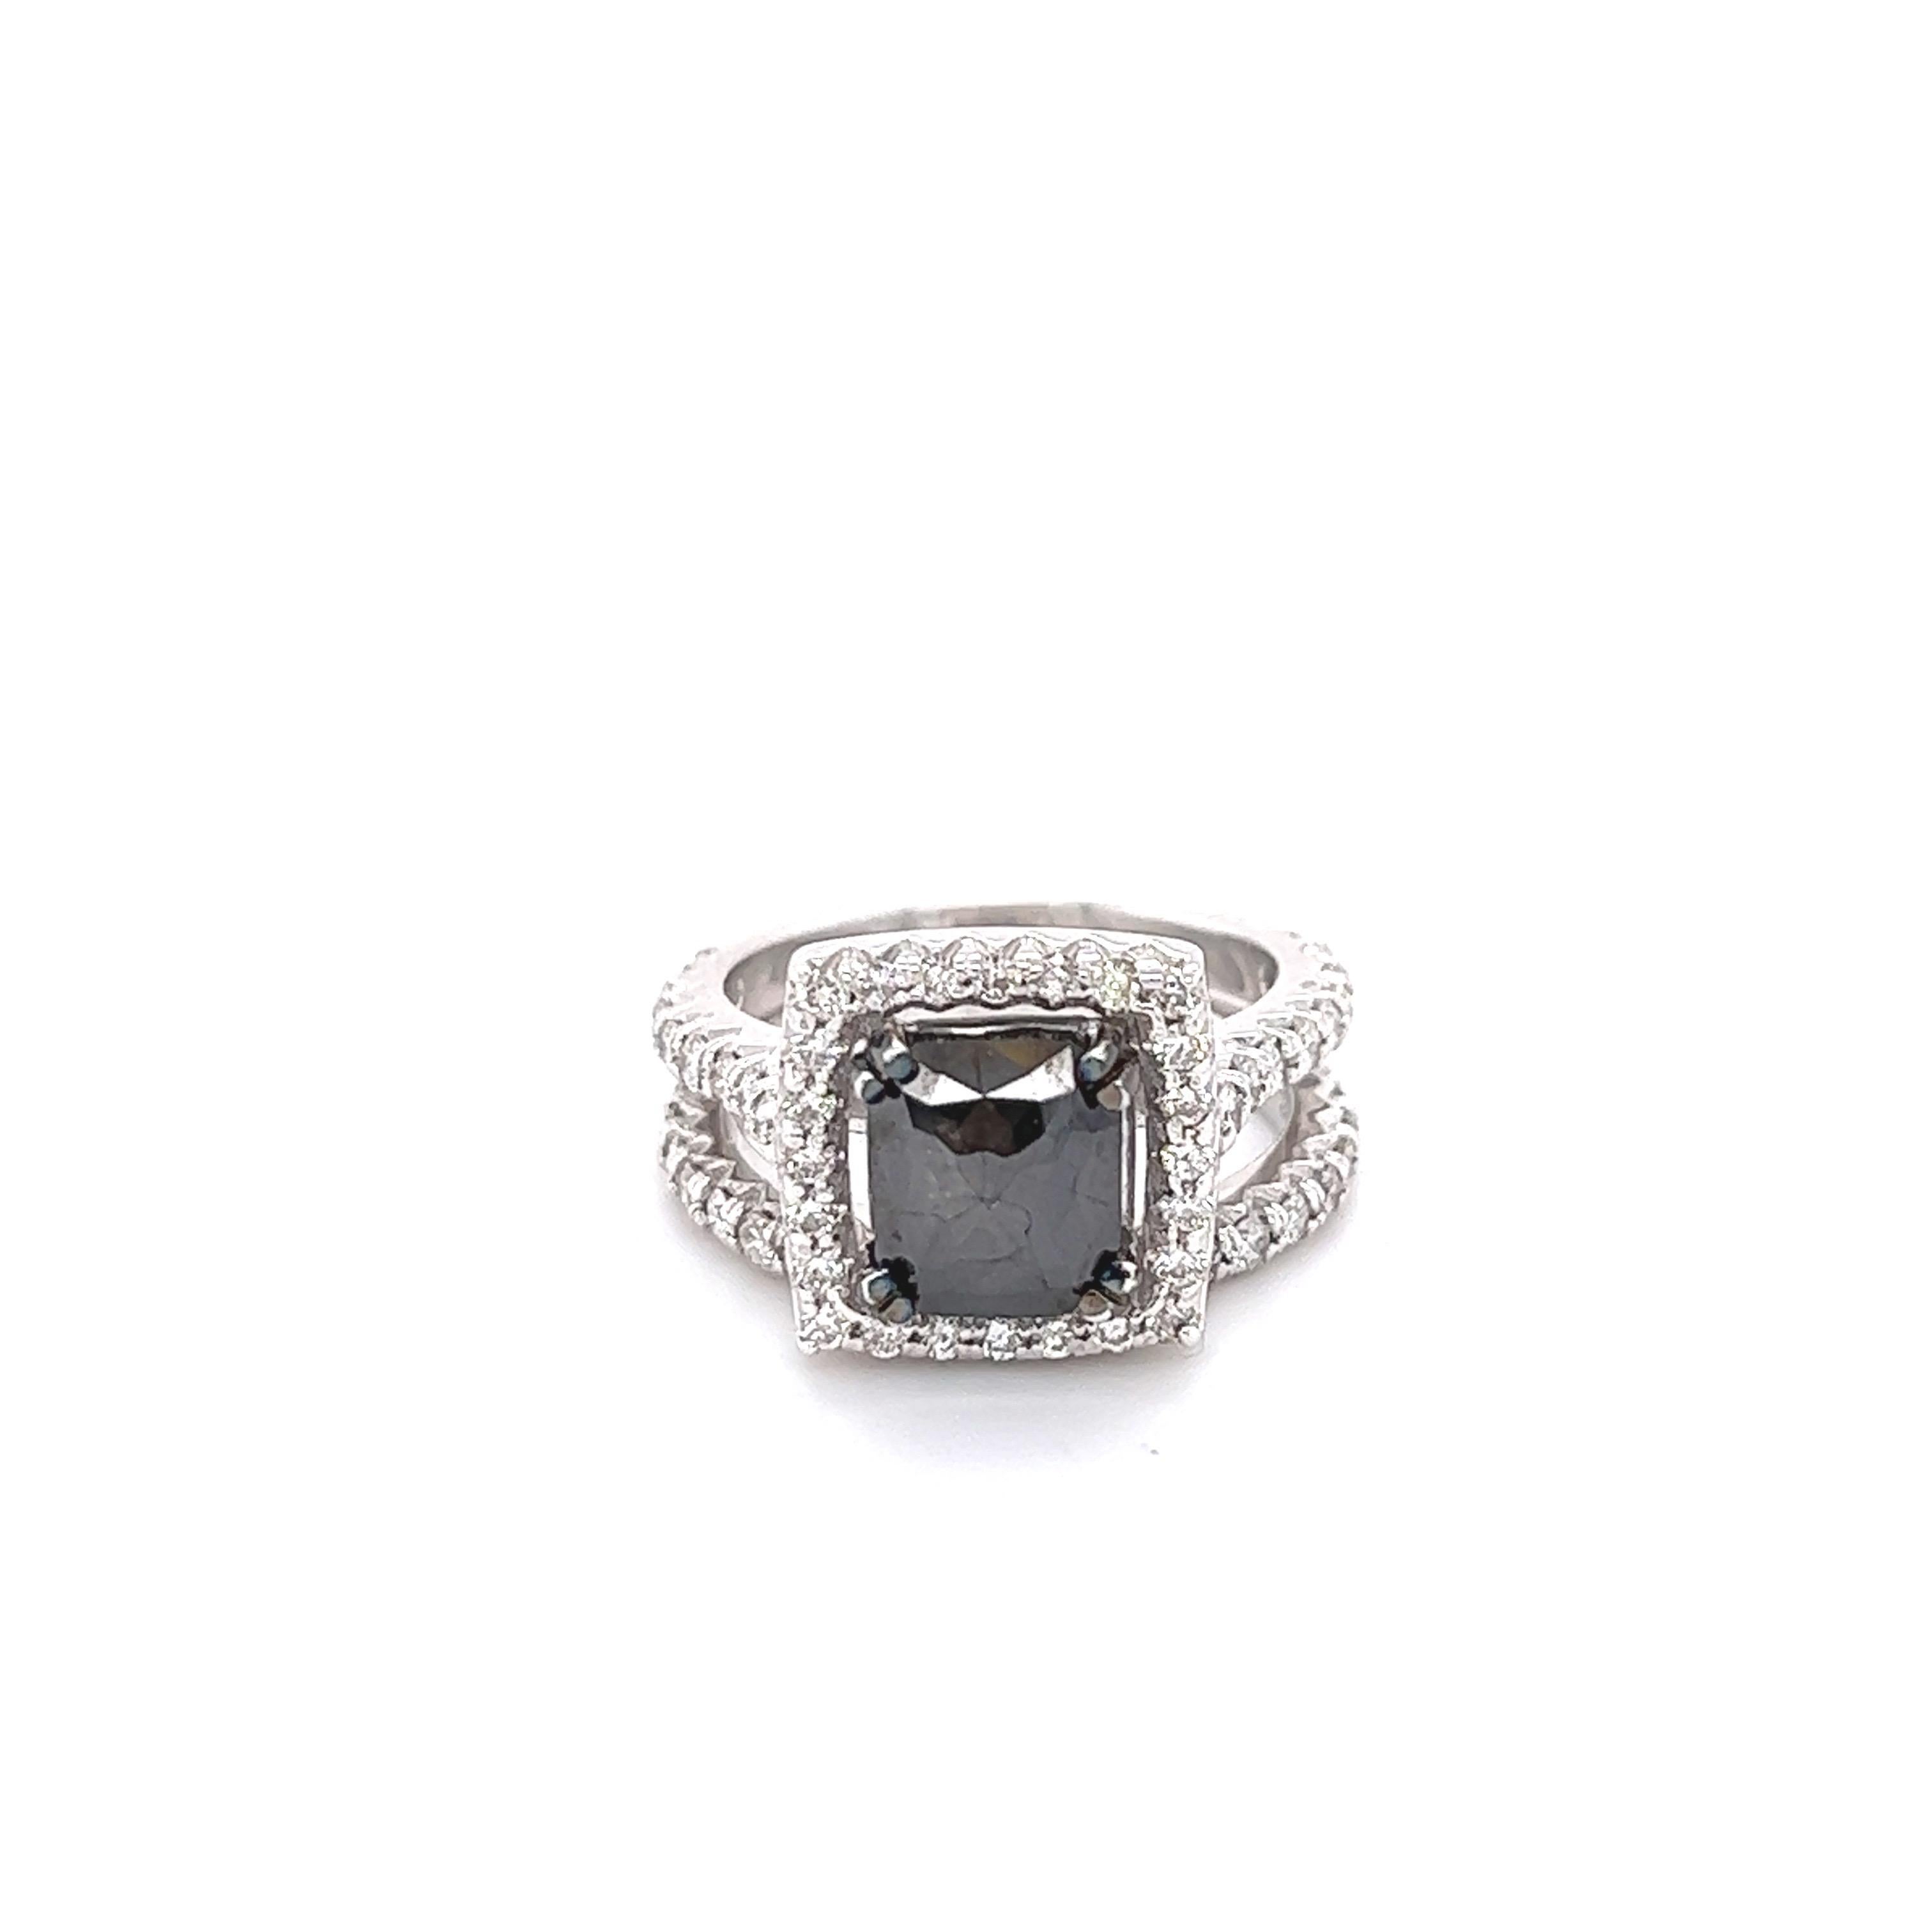 Der natürliche schwarze Diamant im Kissenschliff hat 2,34 Karat und ist umgeben von 56 Diamanten im Rundschliff mit einem Gewicht von 1,05 Karat (Reinheit: VS, Farbe: H). Das Gesamtkaratgewicht des Rings beträgt 3,39 Karat. Der Black Diamond hat